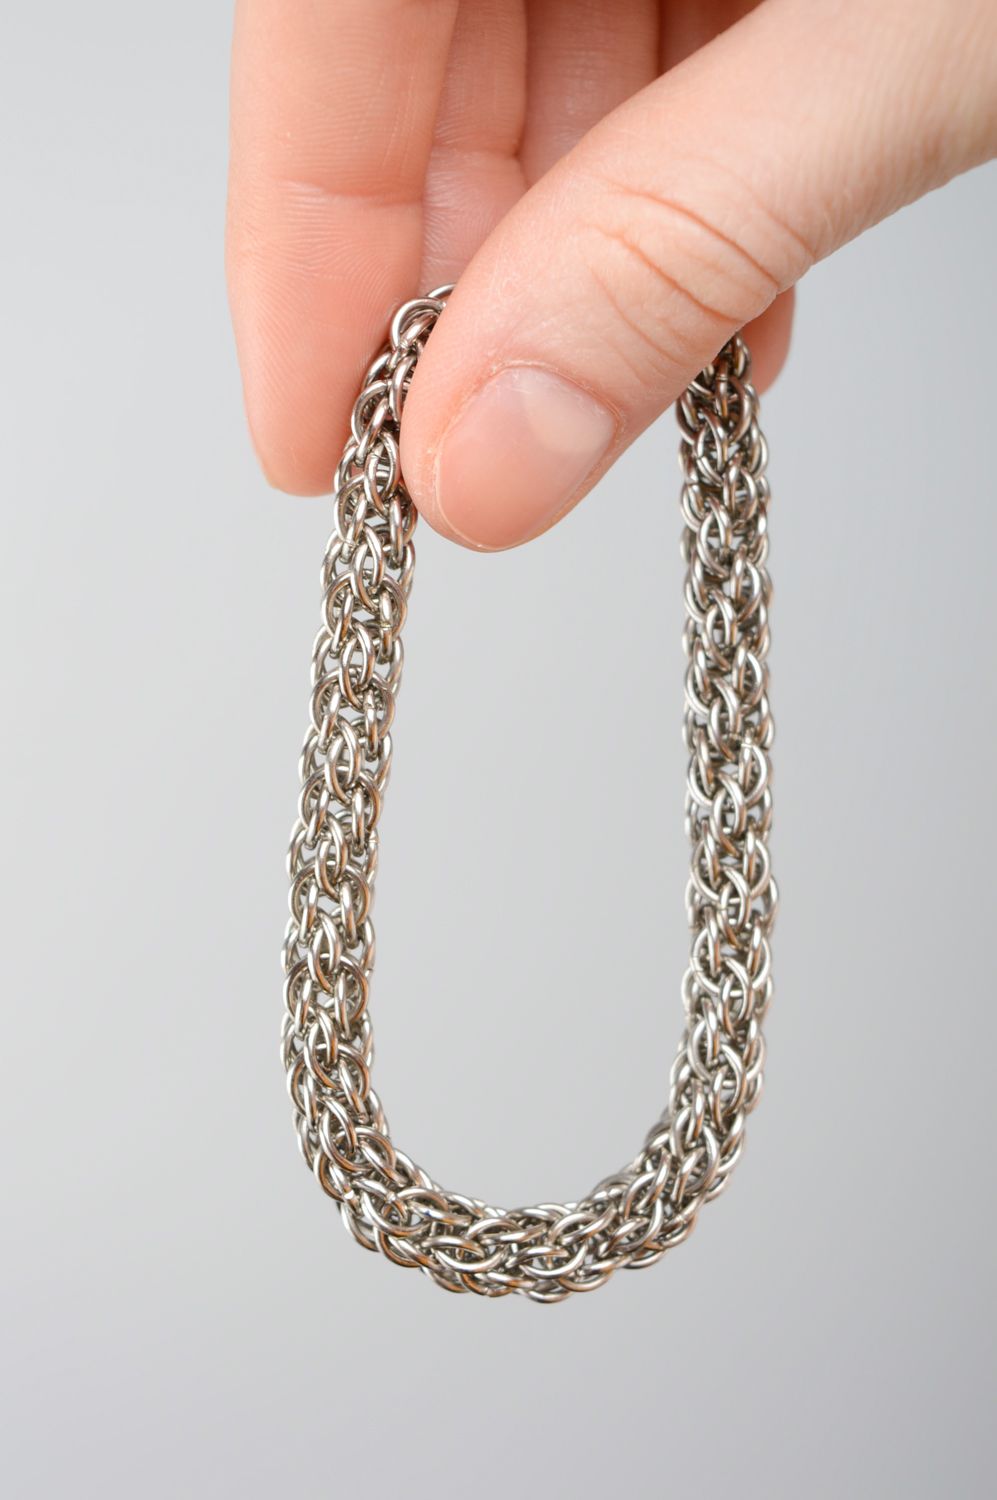 Металлический браслет кольчужный женский оригинальный  фото 3